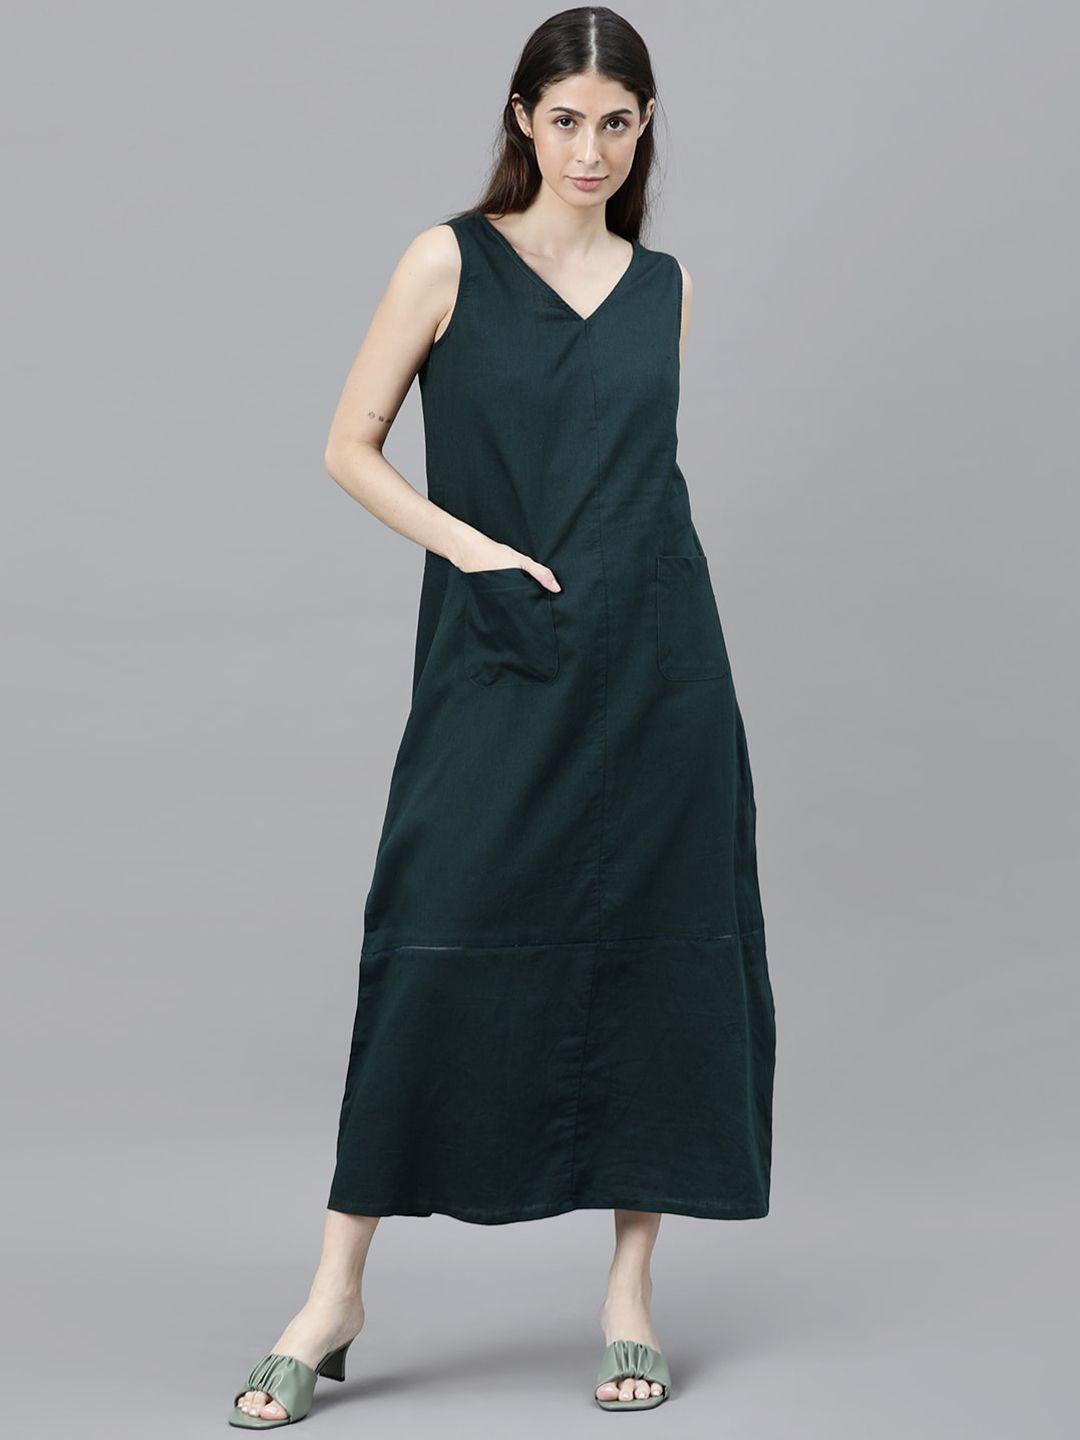 rareism-green-a-line-midi-dress